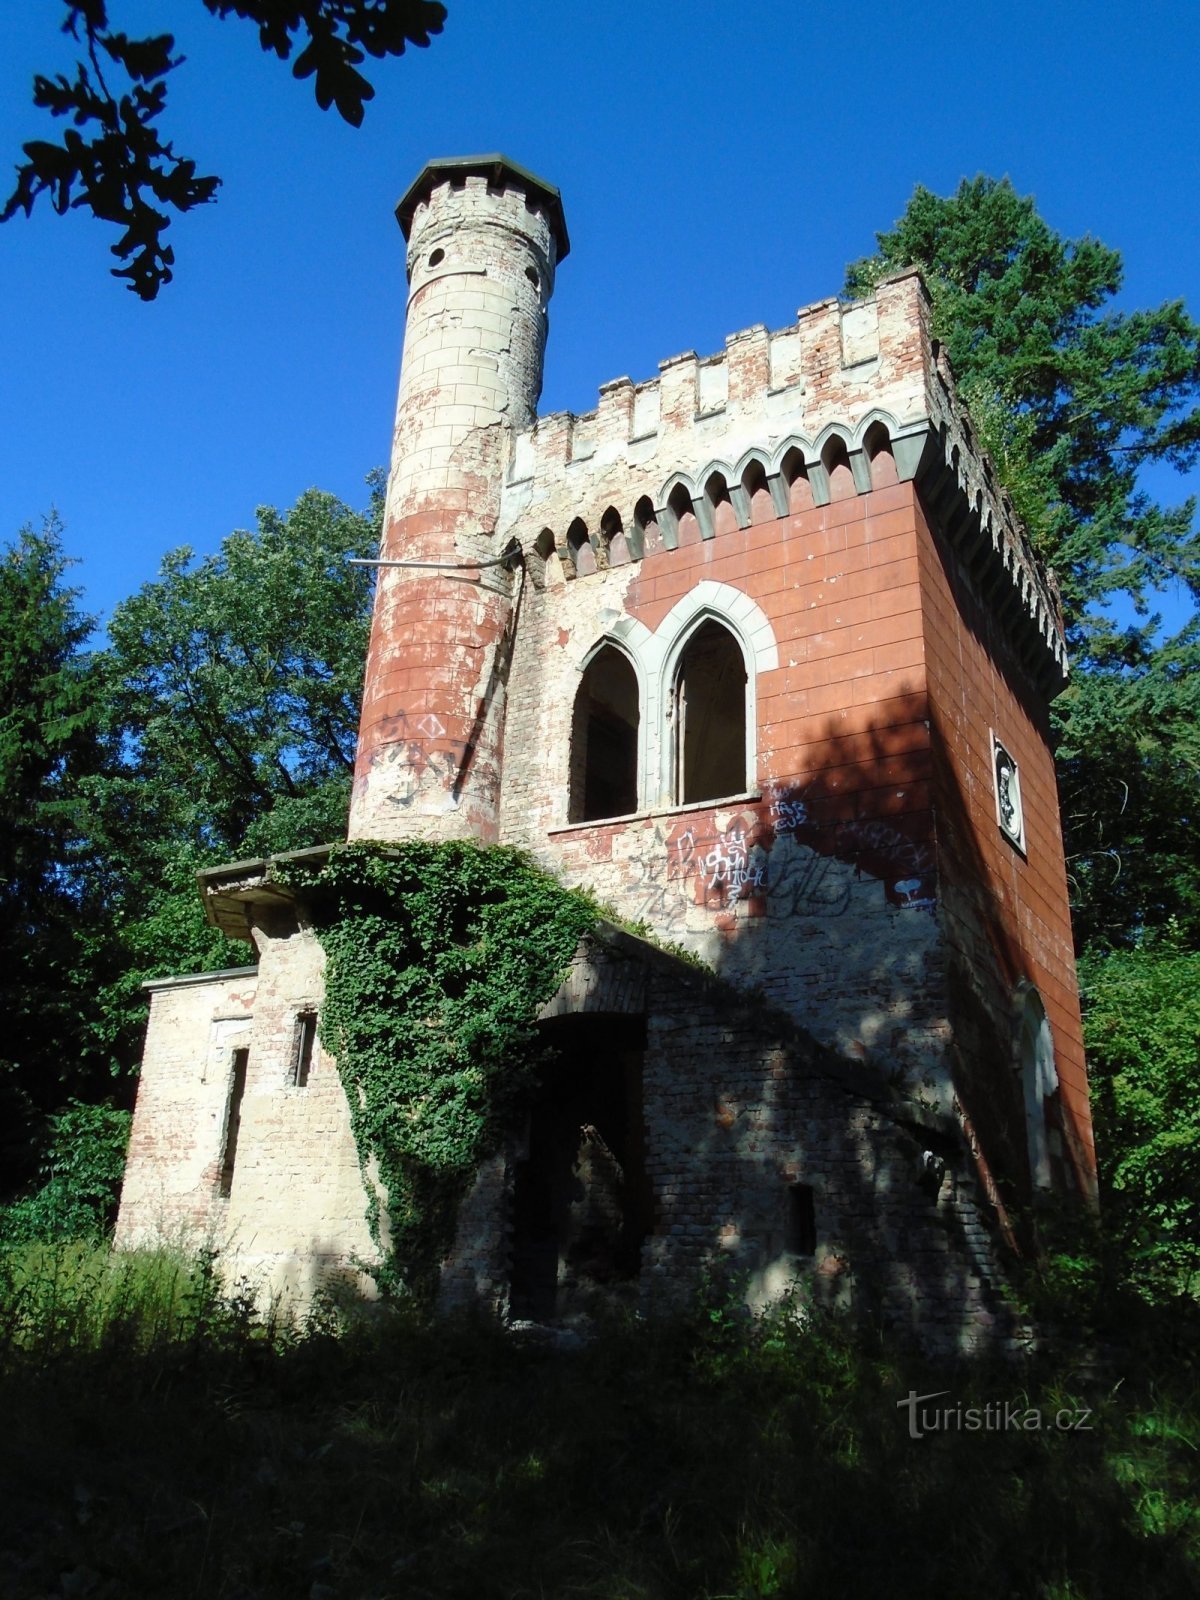 Château d'été de Weinrich (Rohoznice)